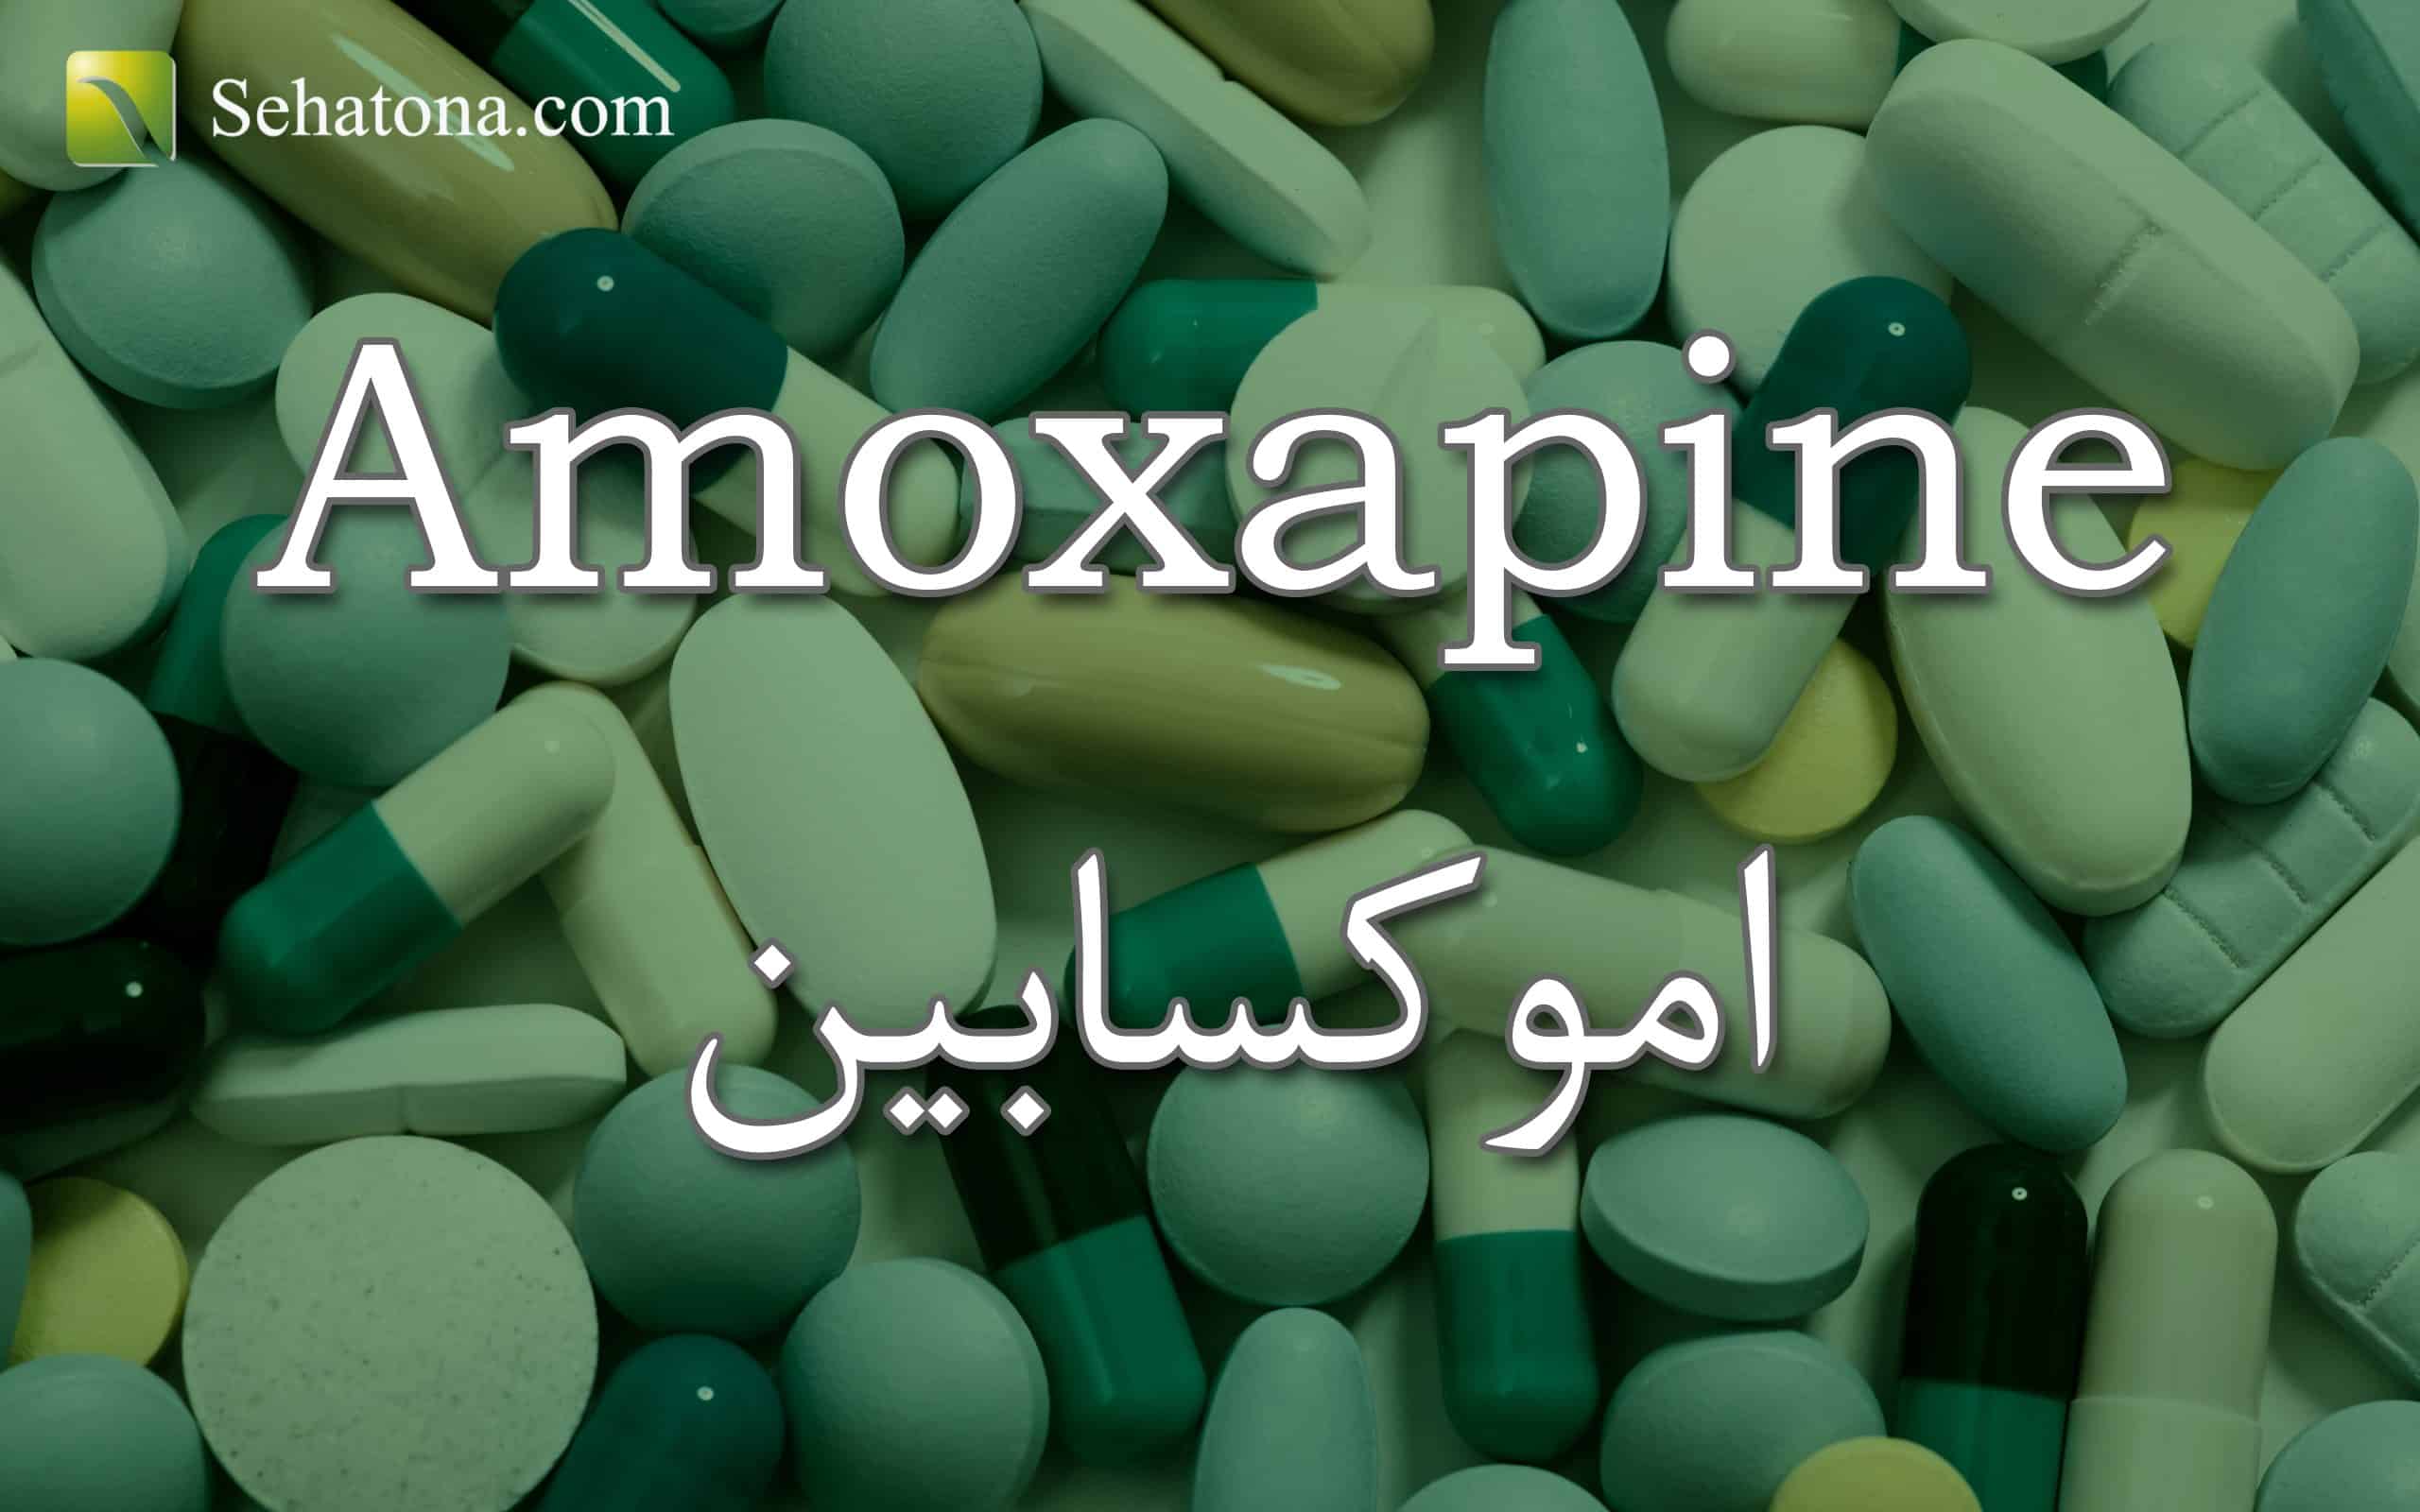 Amoxapine